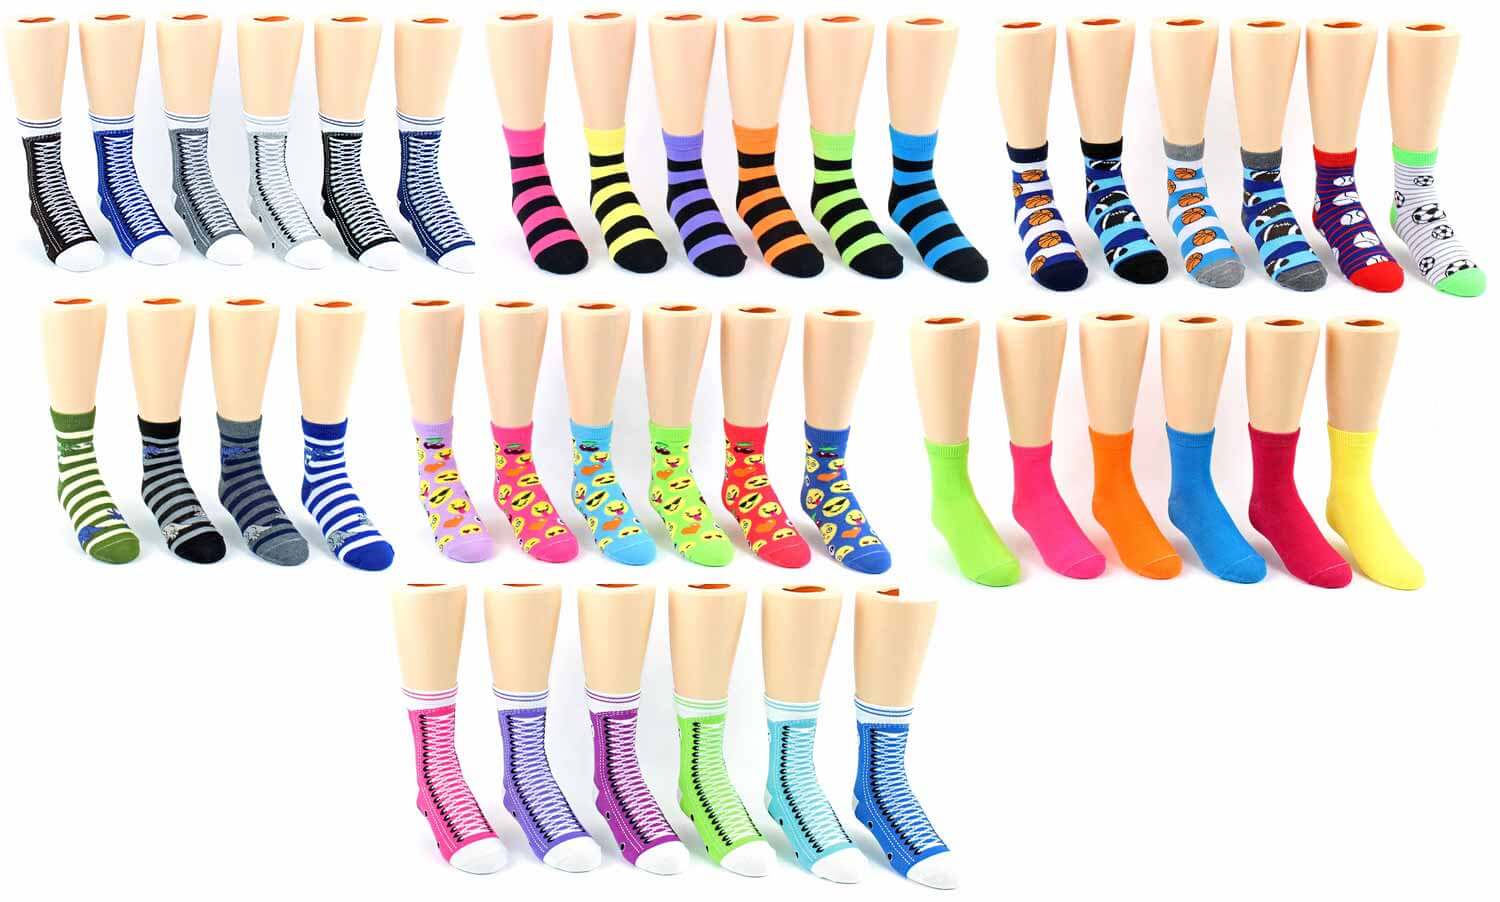 Sock Donation Drive Socks - Children's Novelty Crew Socks - Assorted Sytles